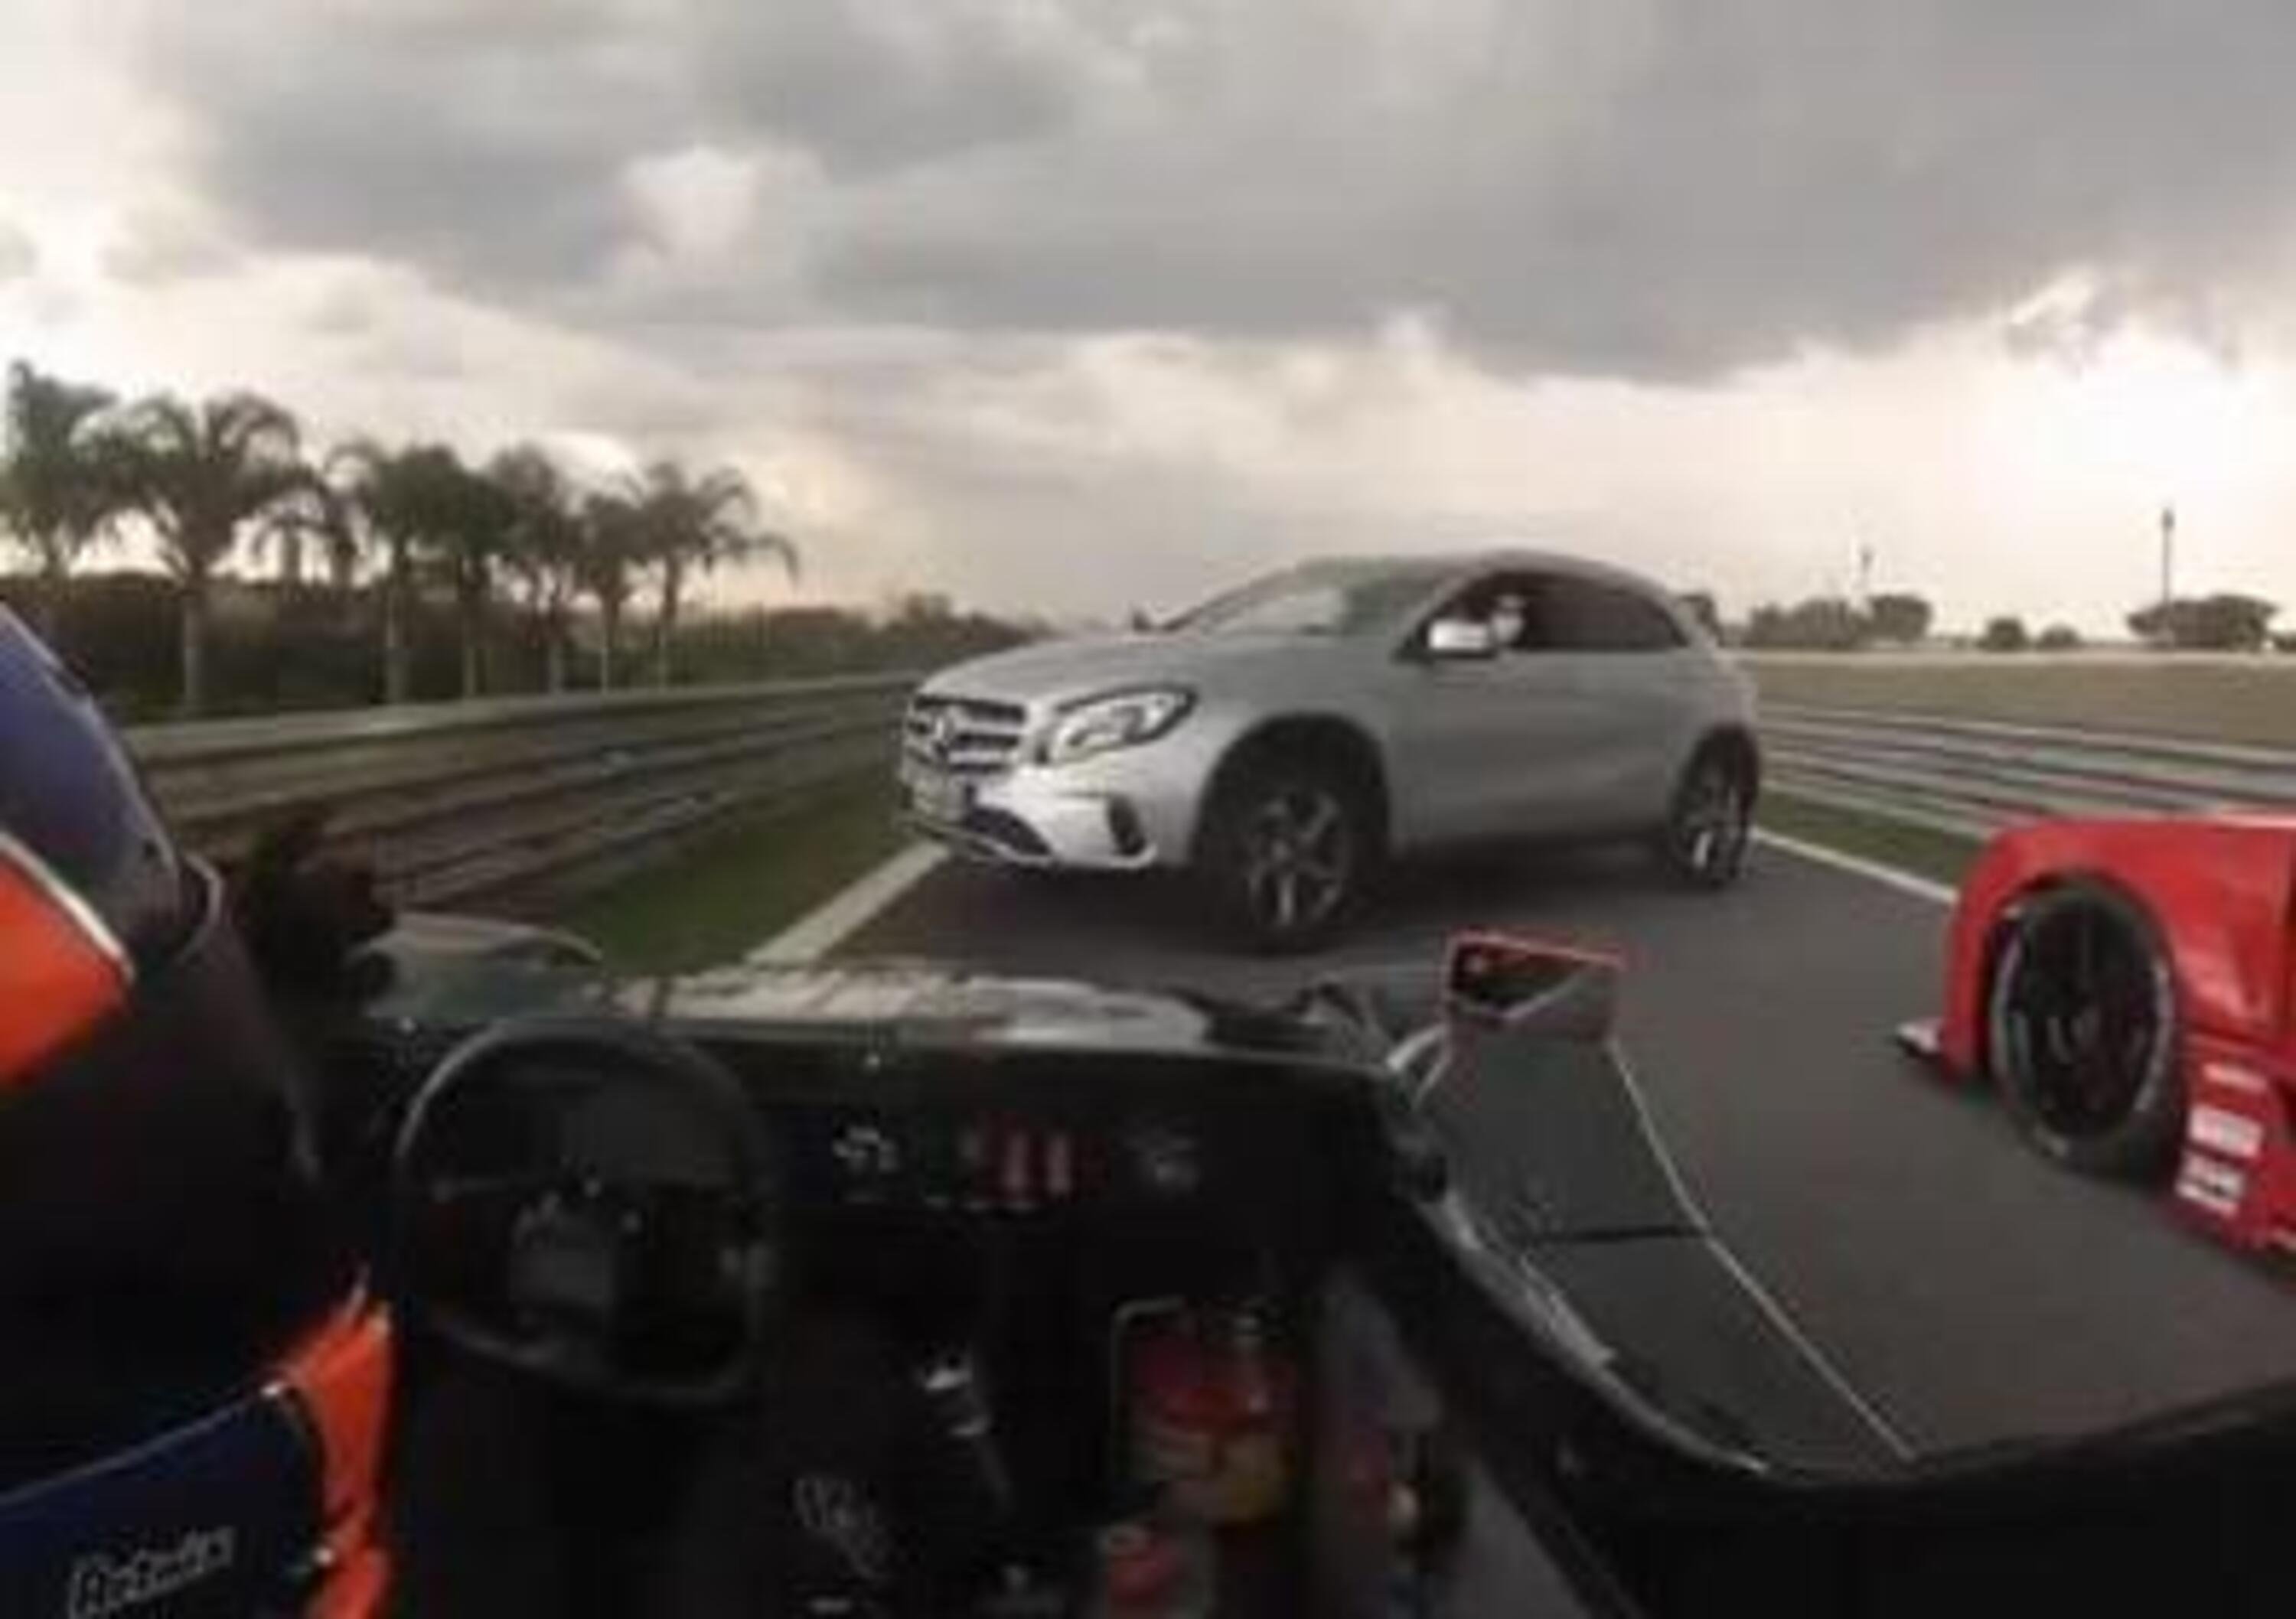 Incredibile a Interlagos: auto &ldquo;civile&rdquo; in mezzo alla pista durante una gara [VIDEO]